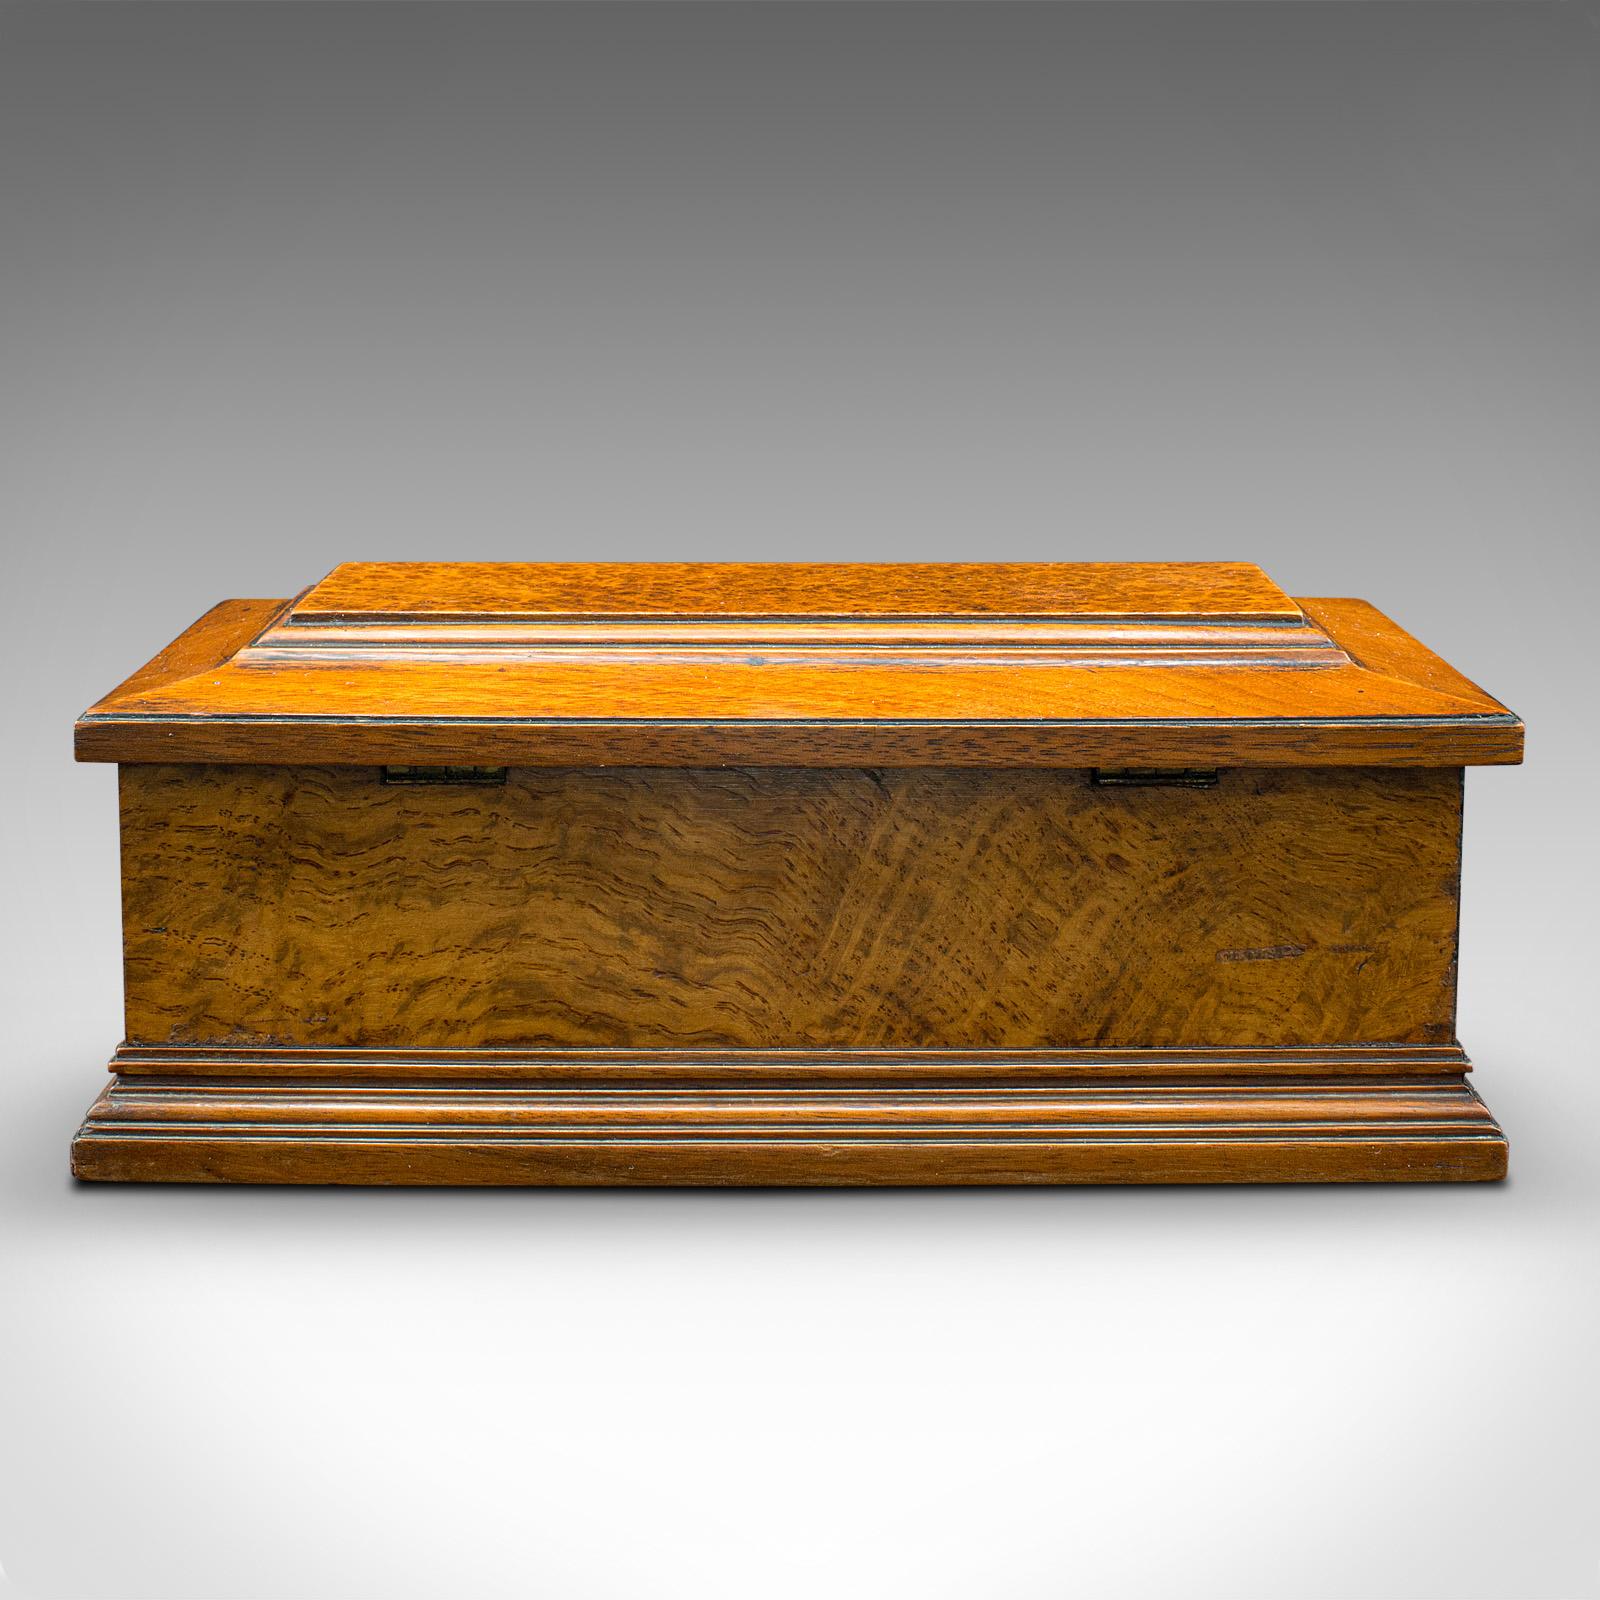 British Antique Gentleman's Glove Box, English, Walnut, Burr, Keepsake, Case, Victorian For Sale